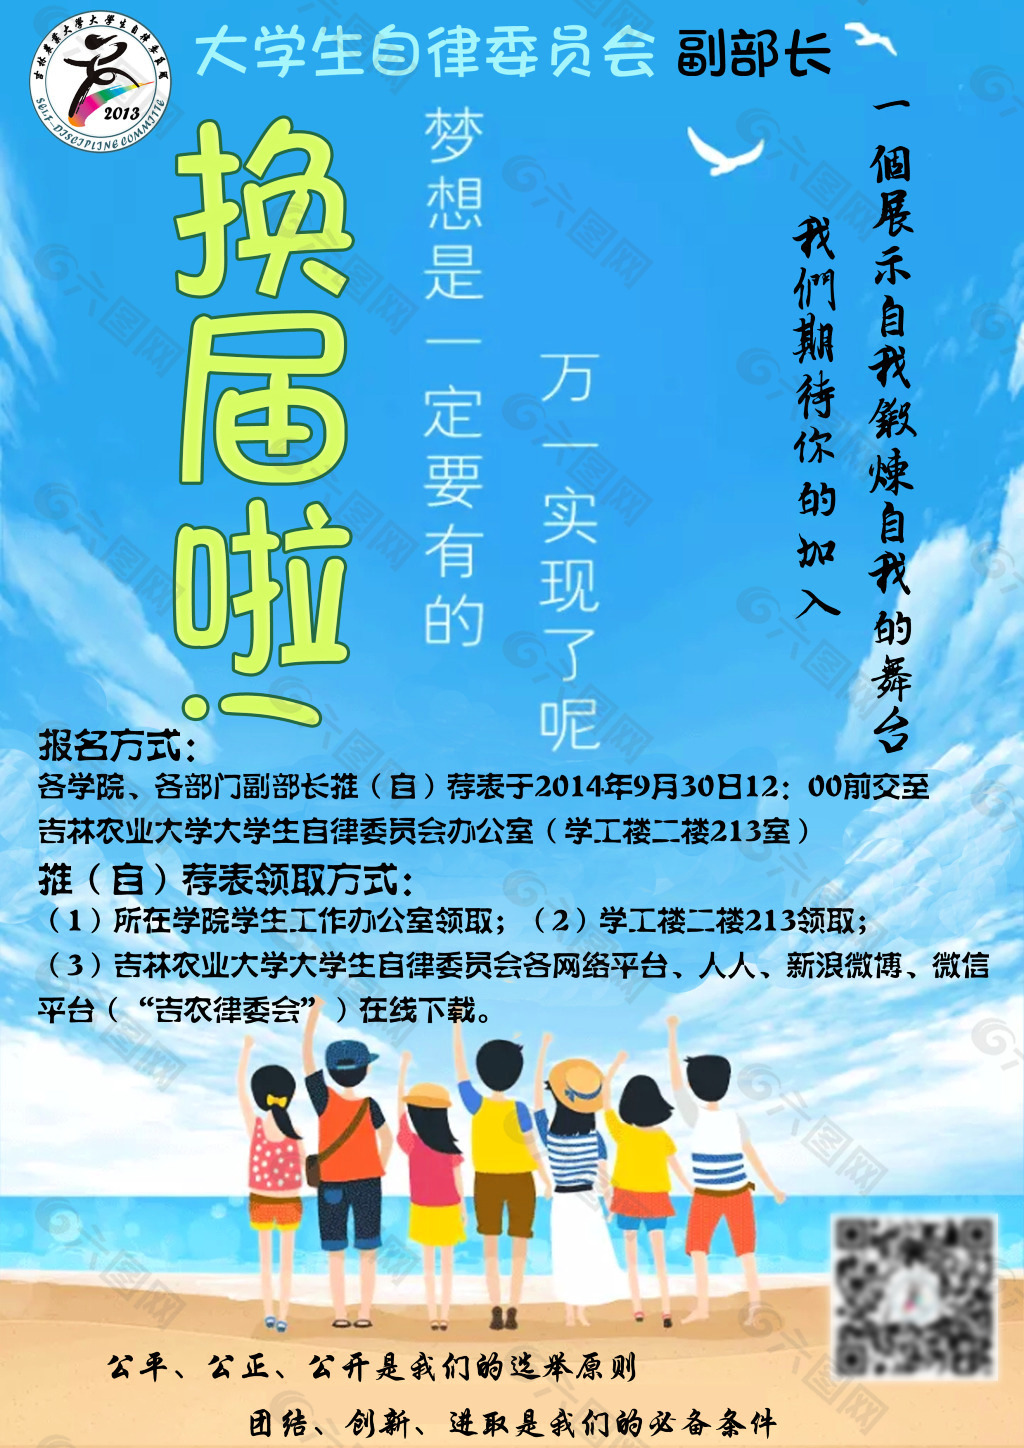 橙白色学生会换届选举活动通知大学生插画手绘校园活动中文海报 - 模板 - Canva可画